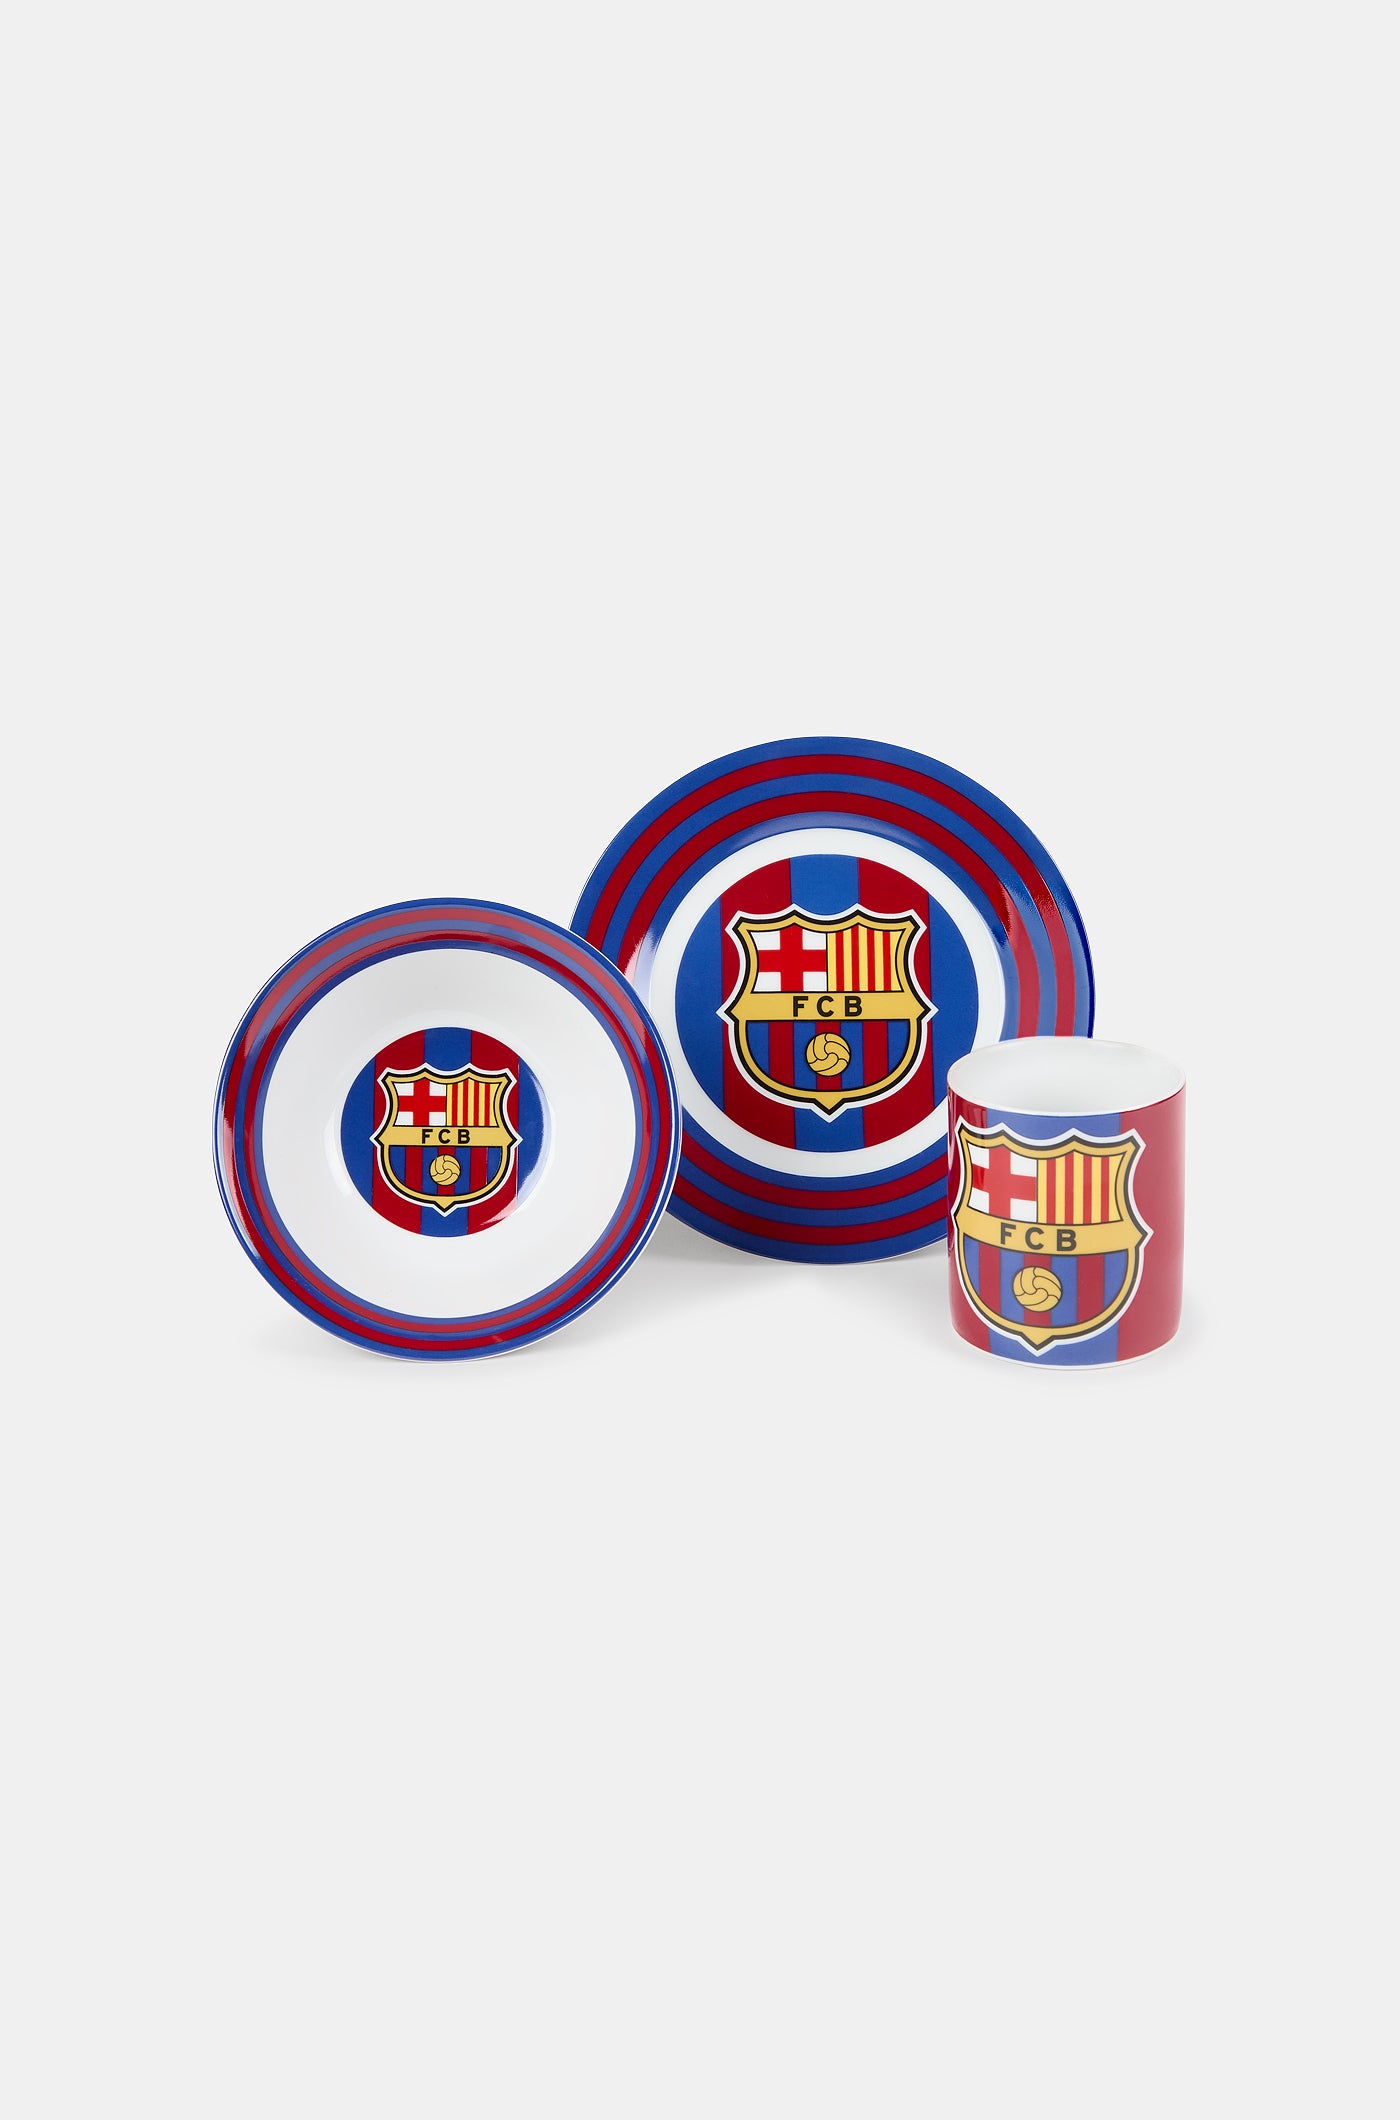 Set de desayuno para bebé del FC Barcelona